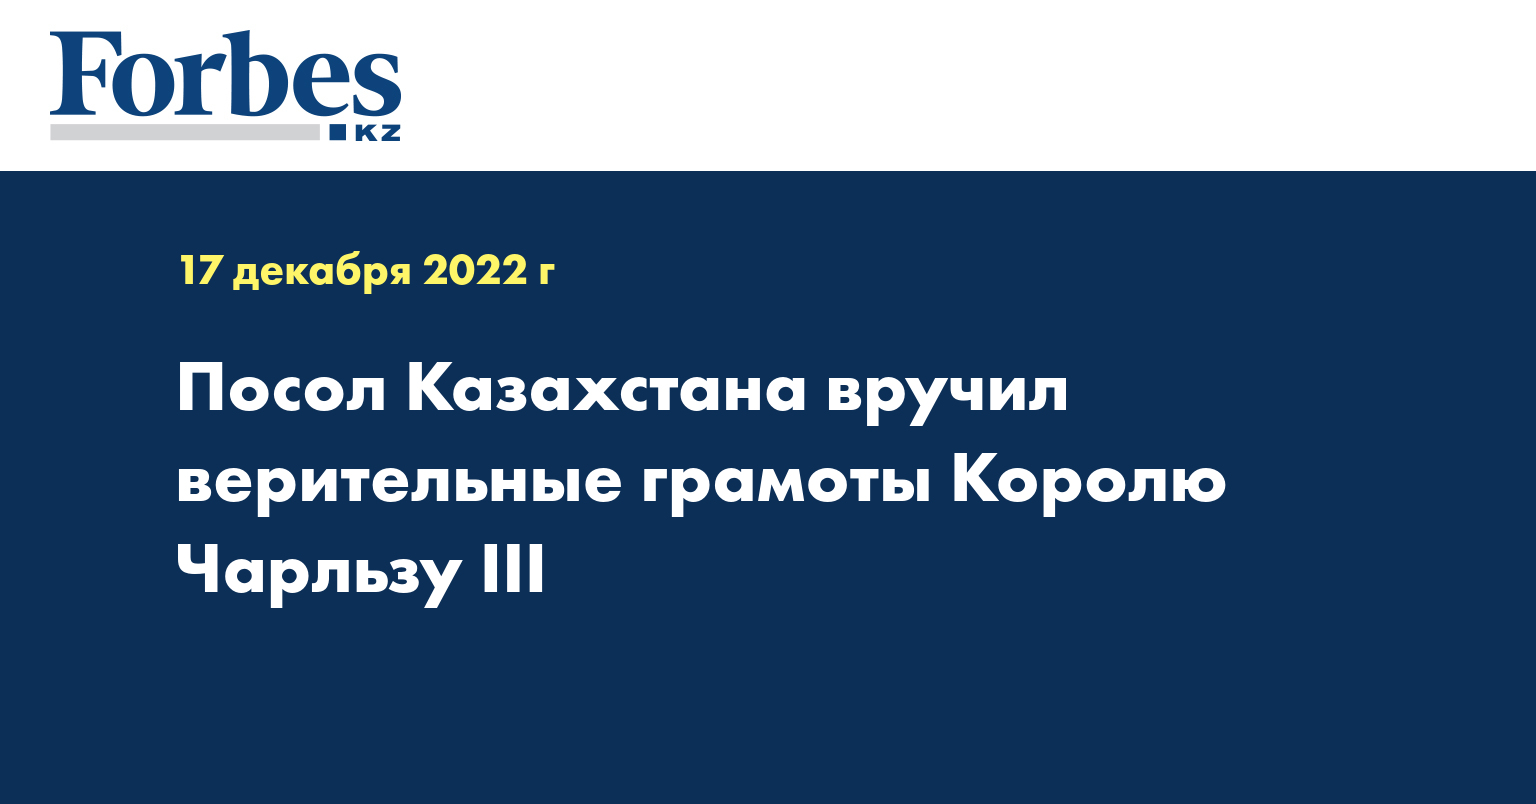 Посол Казахстана вручил верительные грамоты Королю Чарльзу III